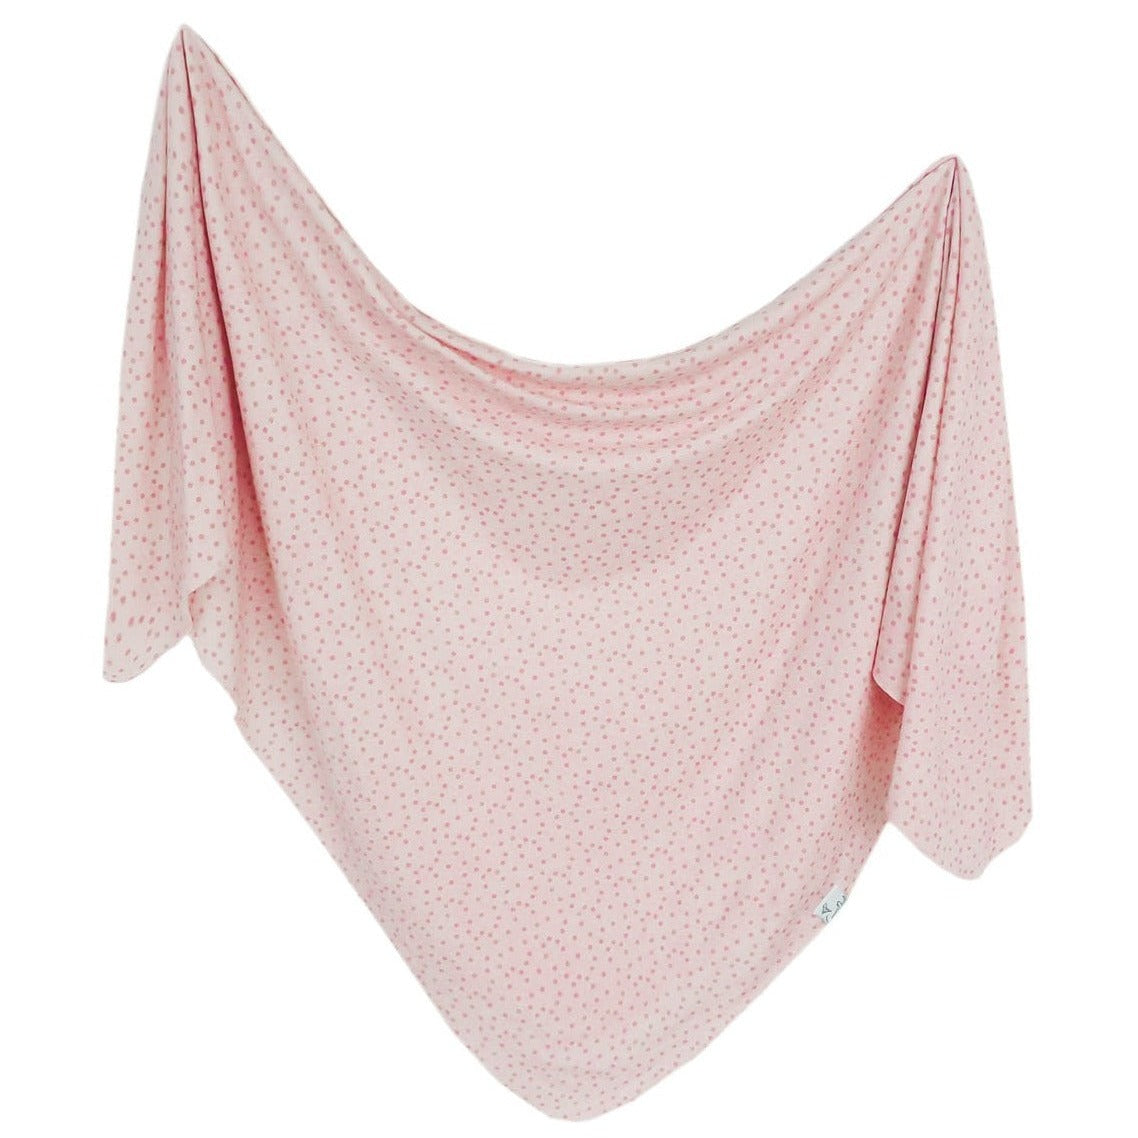 Copper Pearl Knit Swaddle Blanket - Dottie